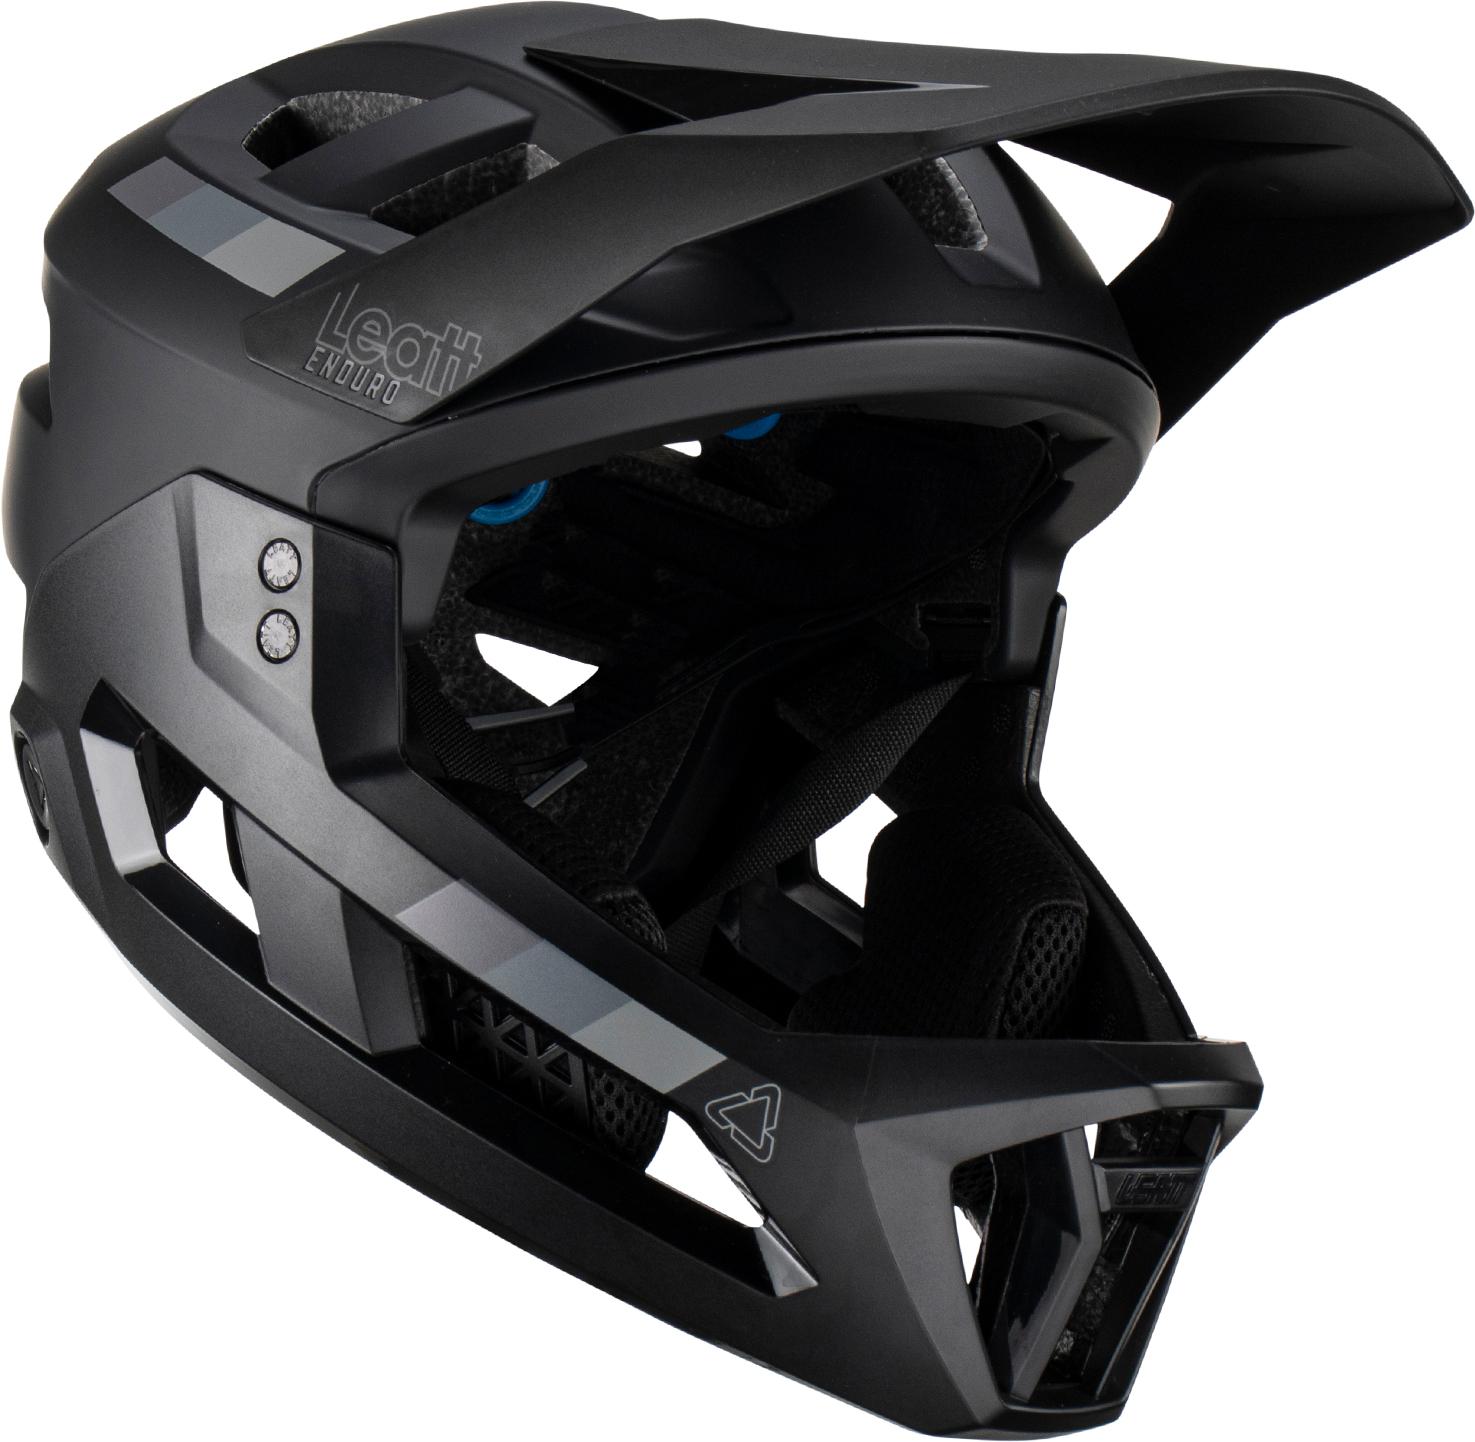 Leatt Mtb Enduro 2.0 Helmet - Stealth